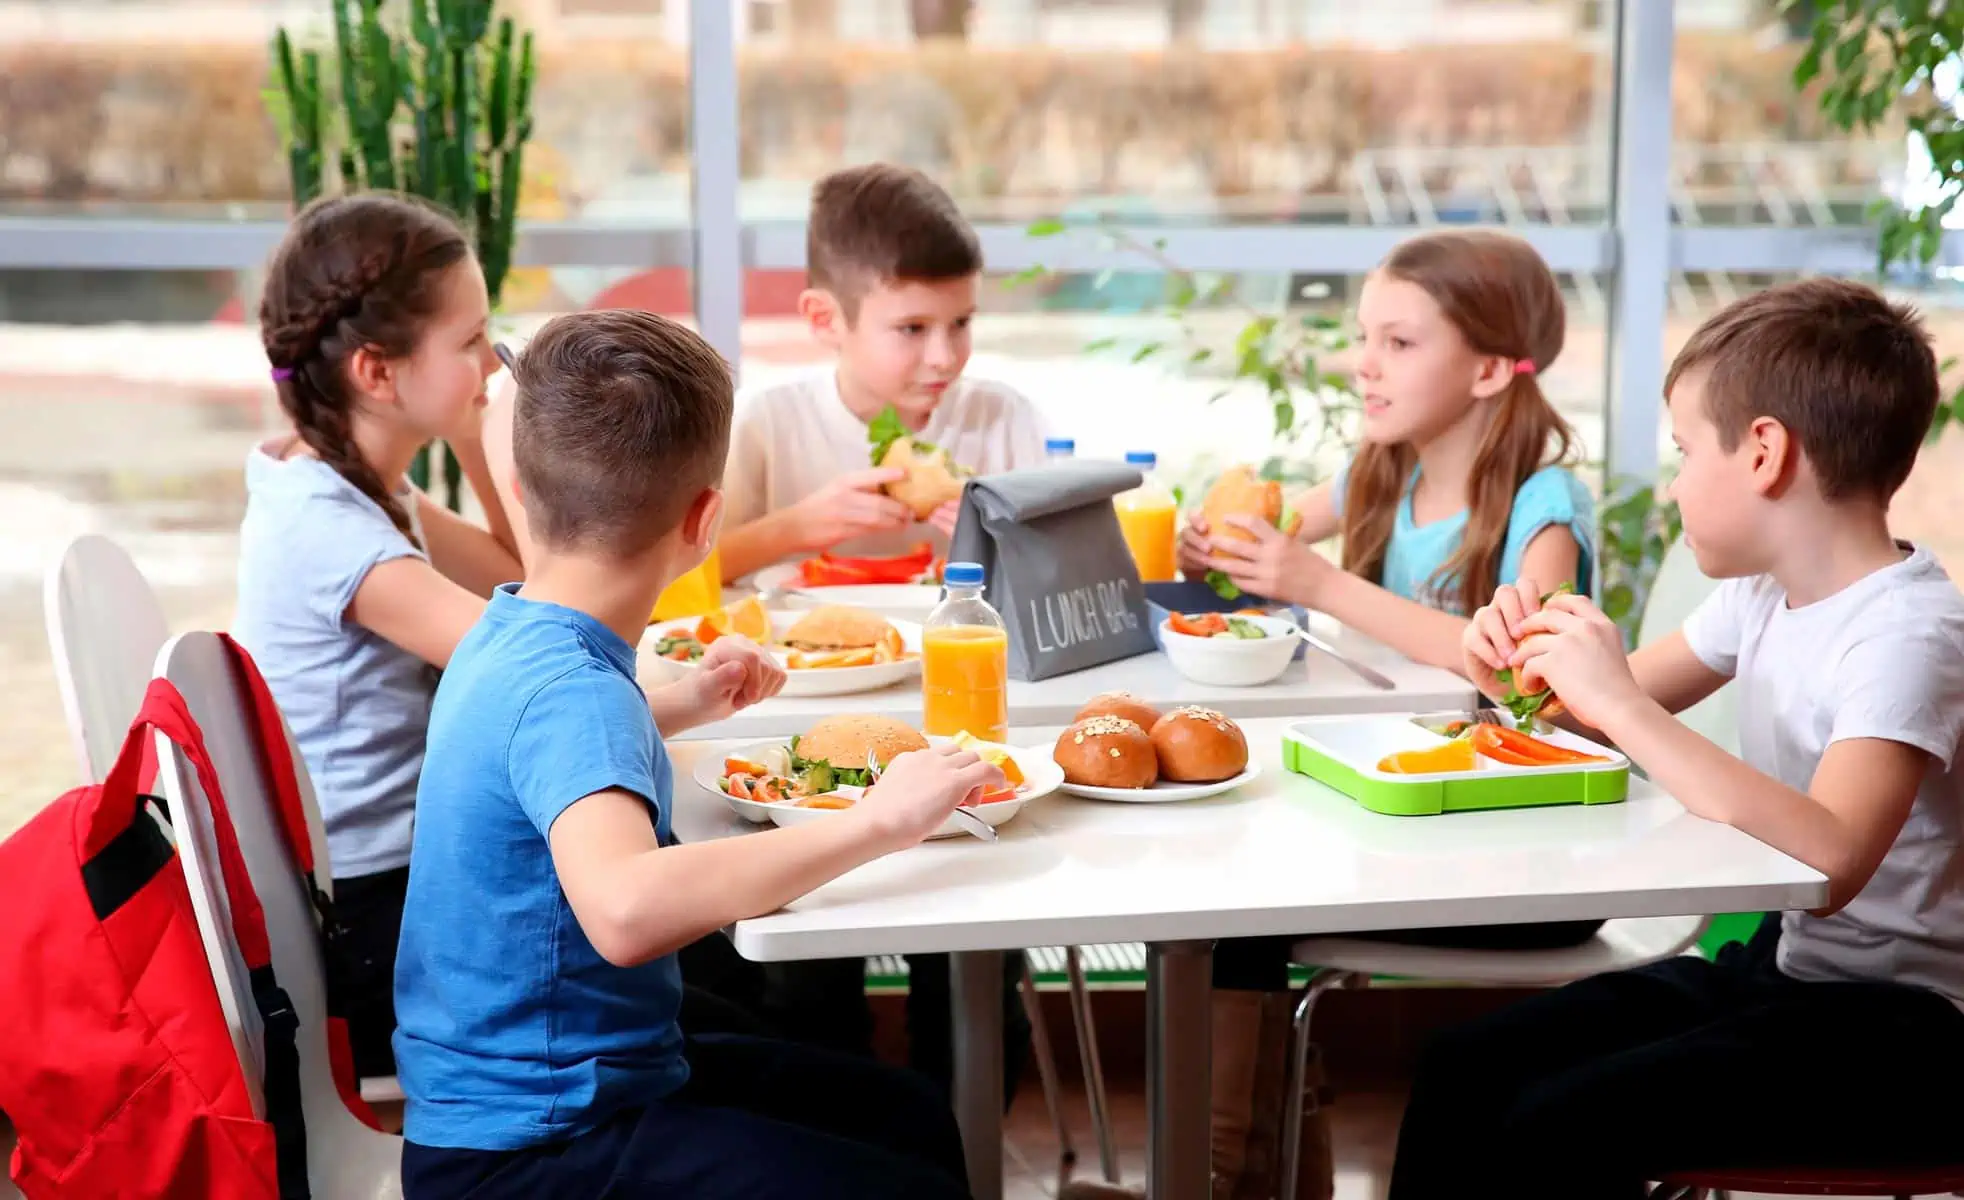 USDA Propone Restricciones al Consumo de Ciertos Alimentos en Instituciones Escolares